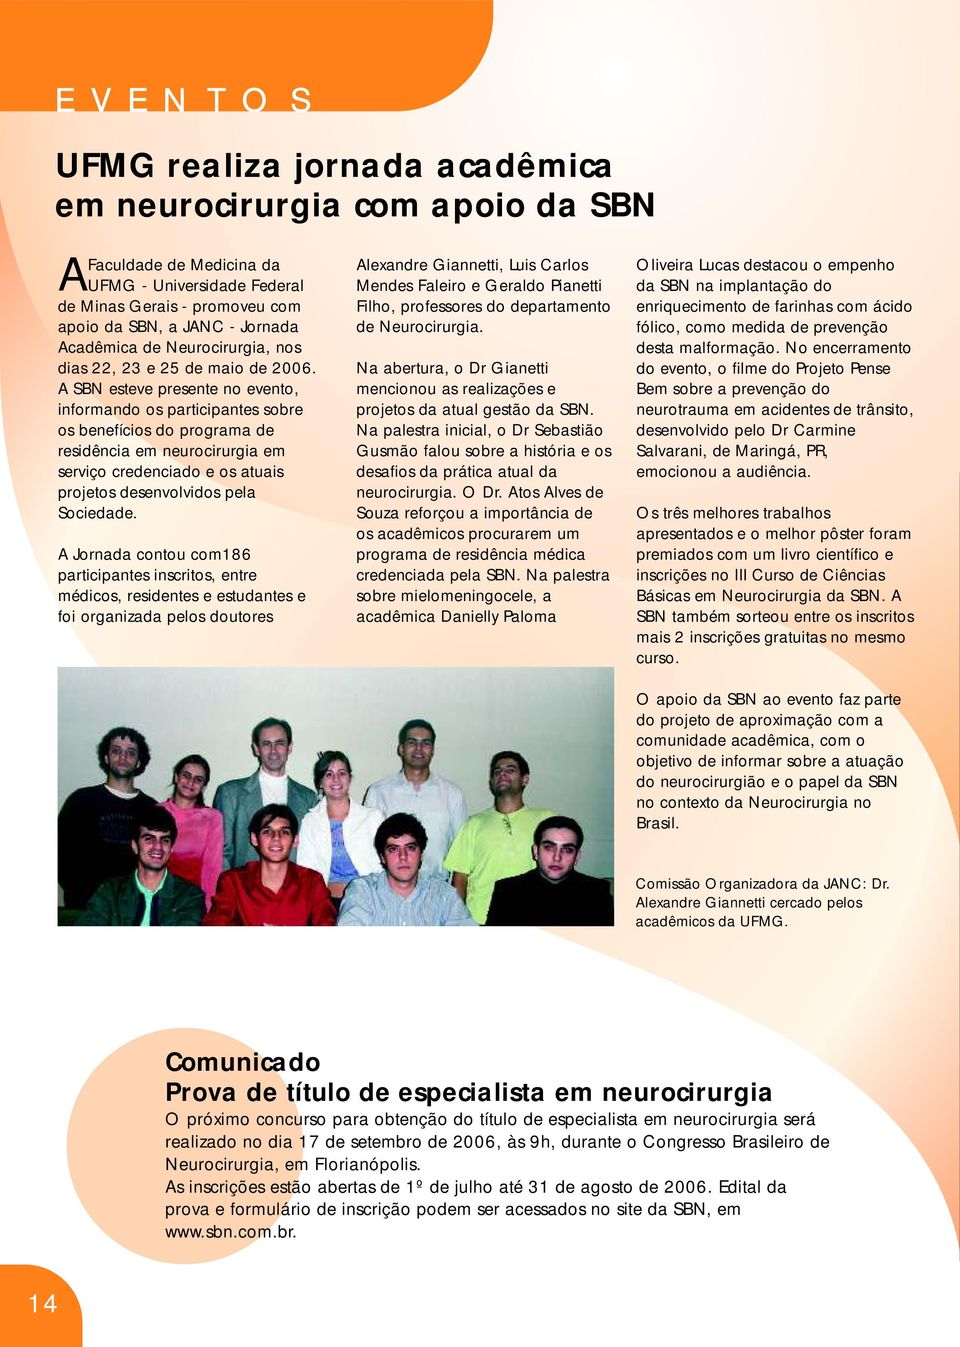 A SBN esteve presente no evento, informando os participantes sobre os benefícios do programa de residência em neurocirurgia em serviço credenciado e os atuais projetos desenvolvidos pela Sociedade.